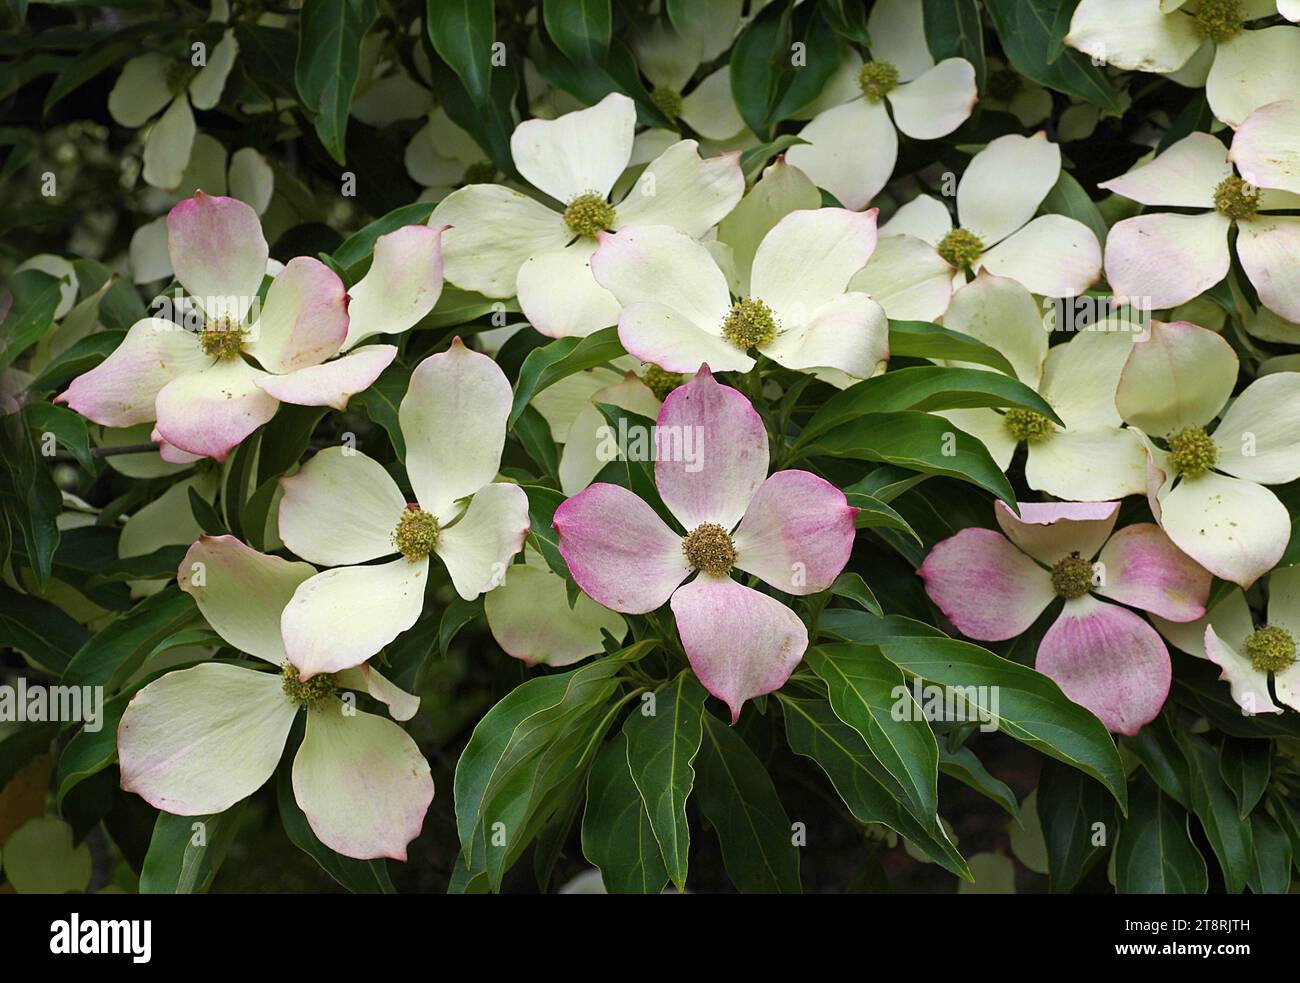 Cornus florida (cornouilles à fleurs) est une espèce de plante à fleurs de la famille des Cornaceae originaire de l'est de l'Amérique du Nord et du nord du Mexique. Une population endémique s'étendait autrefois de la côte sud du Maine au sud jusqu'au nord de la Floride et à l'ouest jusqu'au fleuve Mississippi Banque D'Images